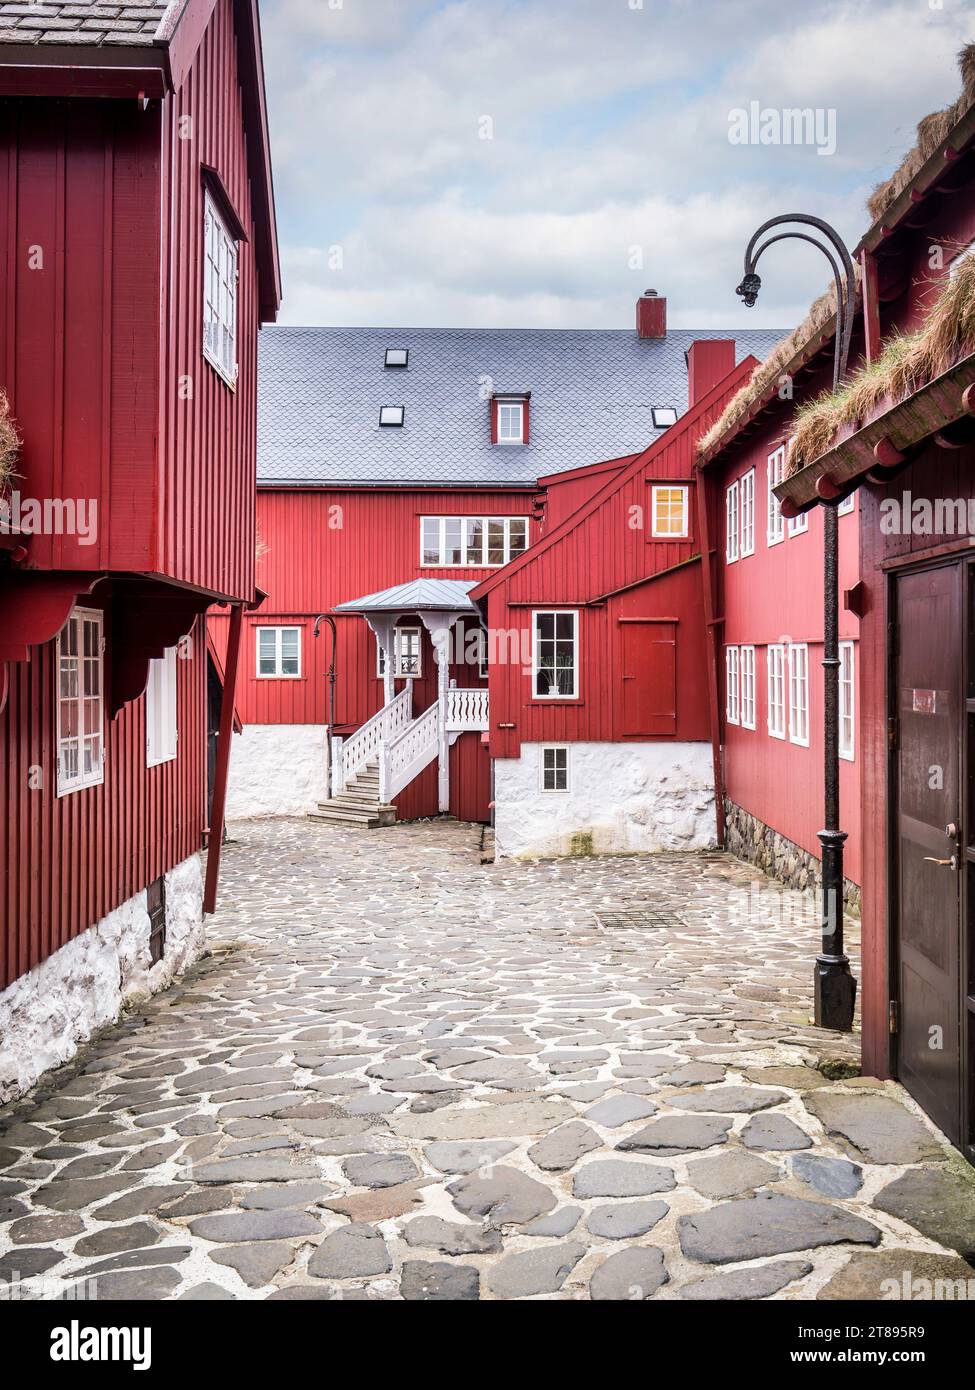 Gebäude im traditionellen Stil, teilweise mit Rasen überdacht, in Tinganes, der Altstadt von Torshavn, der Hauptstadt der Färöer. Stockfoto